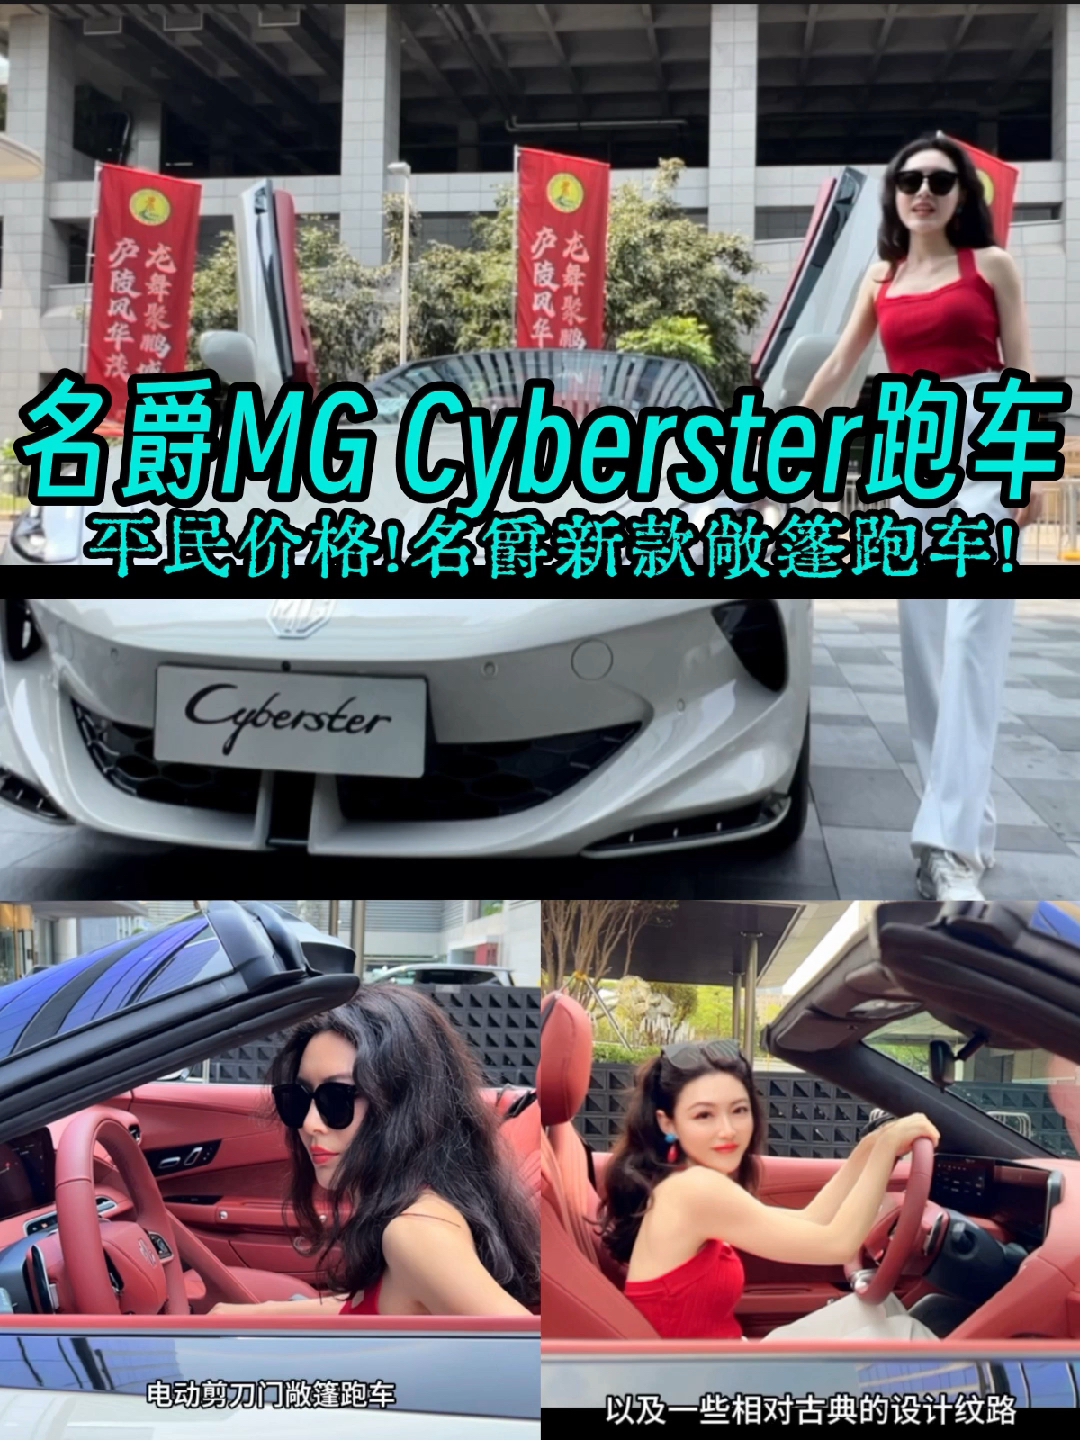 剪刀门配敞篷?帅气的MG r新款跑车#汽车人共创计划#MG Cyberster #敞篷 #国产车